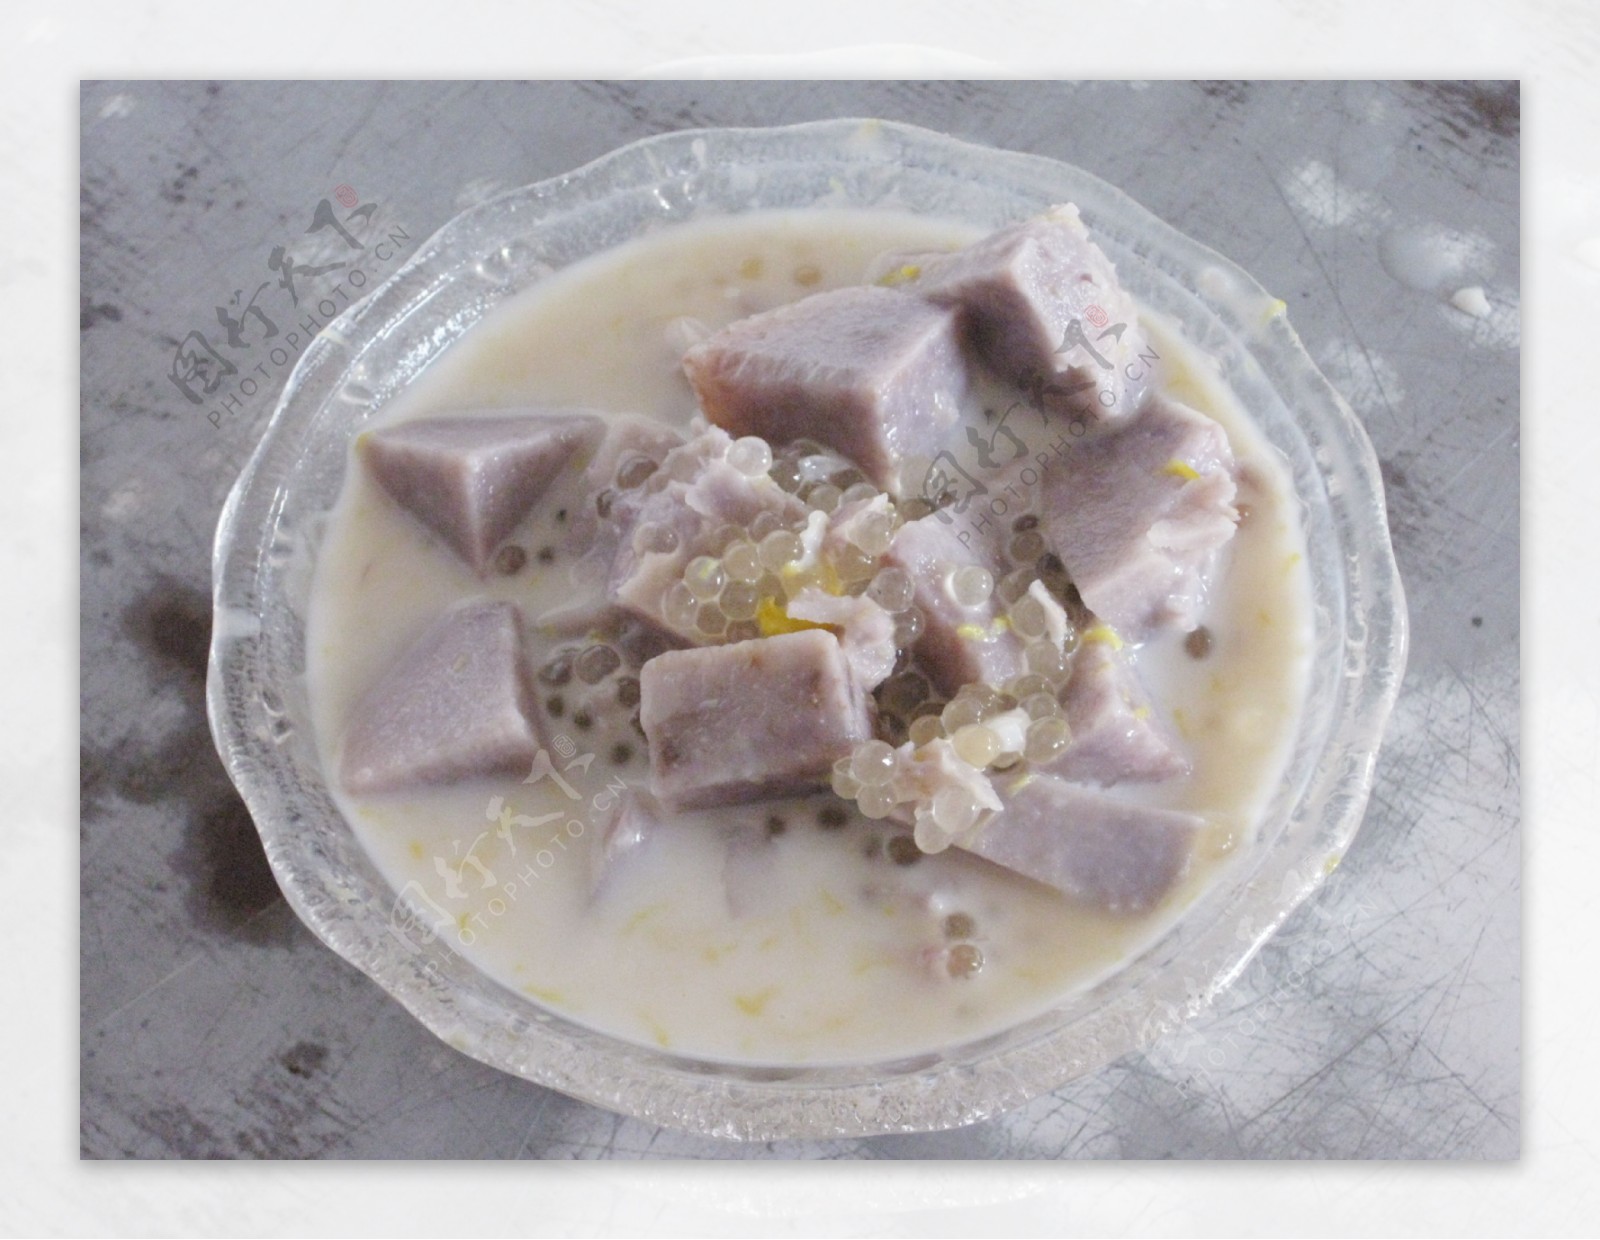 芋头红薯西米露,芋头红薯西米露的家常做法 - 美食杰芋头红薯西米露做法大全